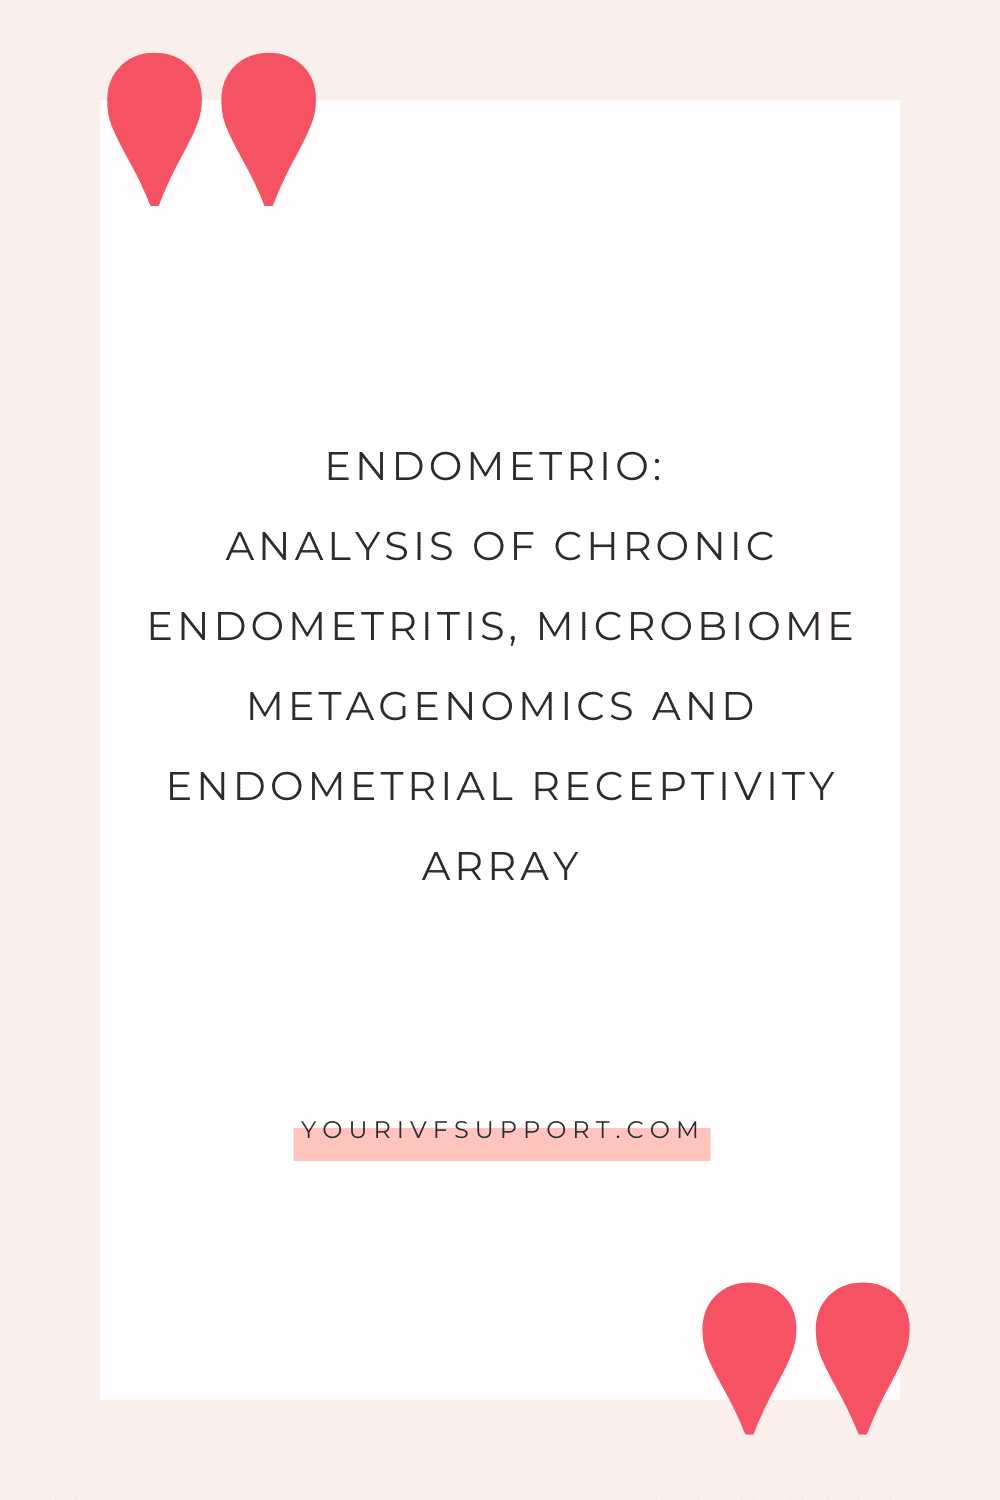 EndomeTRIO